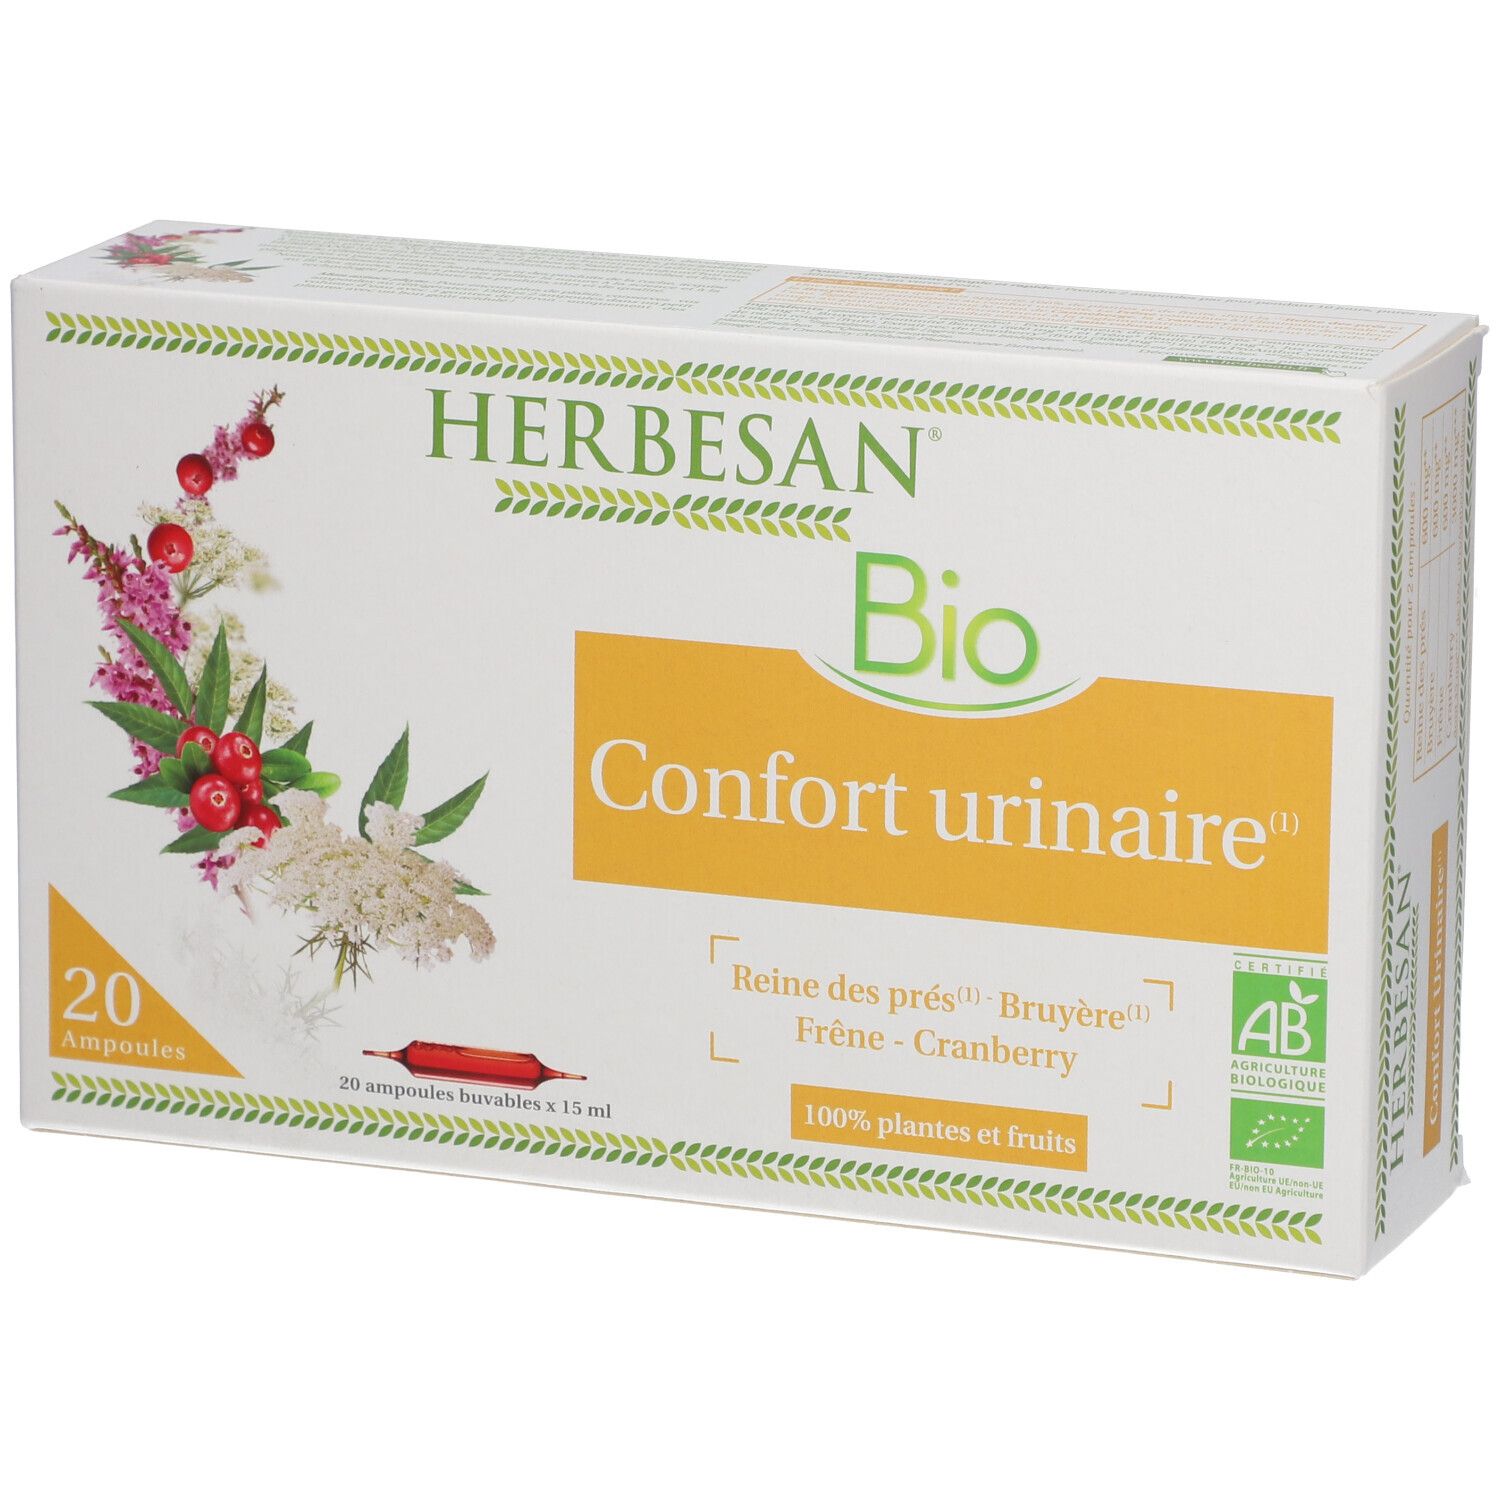 Herbesan0® Reine des prés Confort urinaire Bio Ampoule